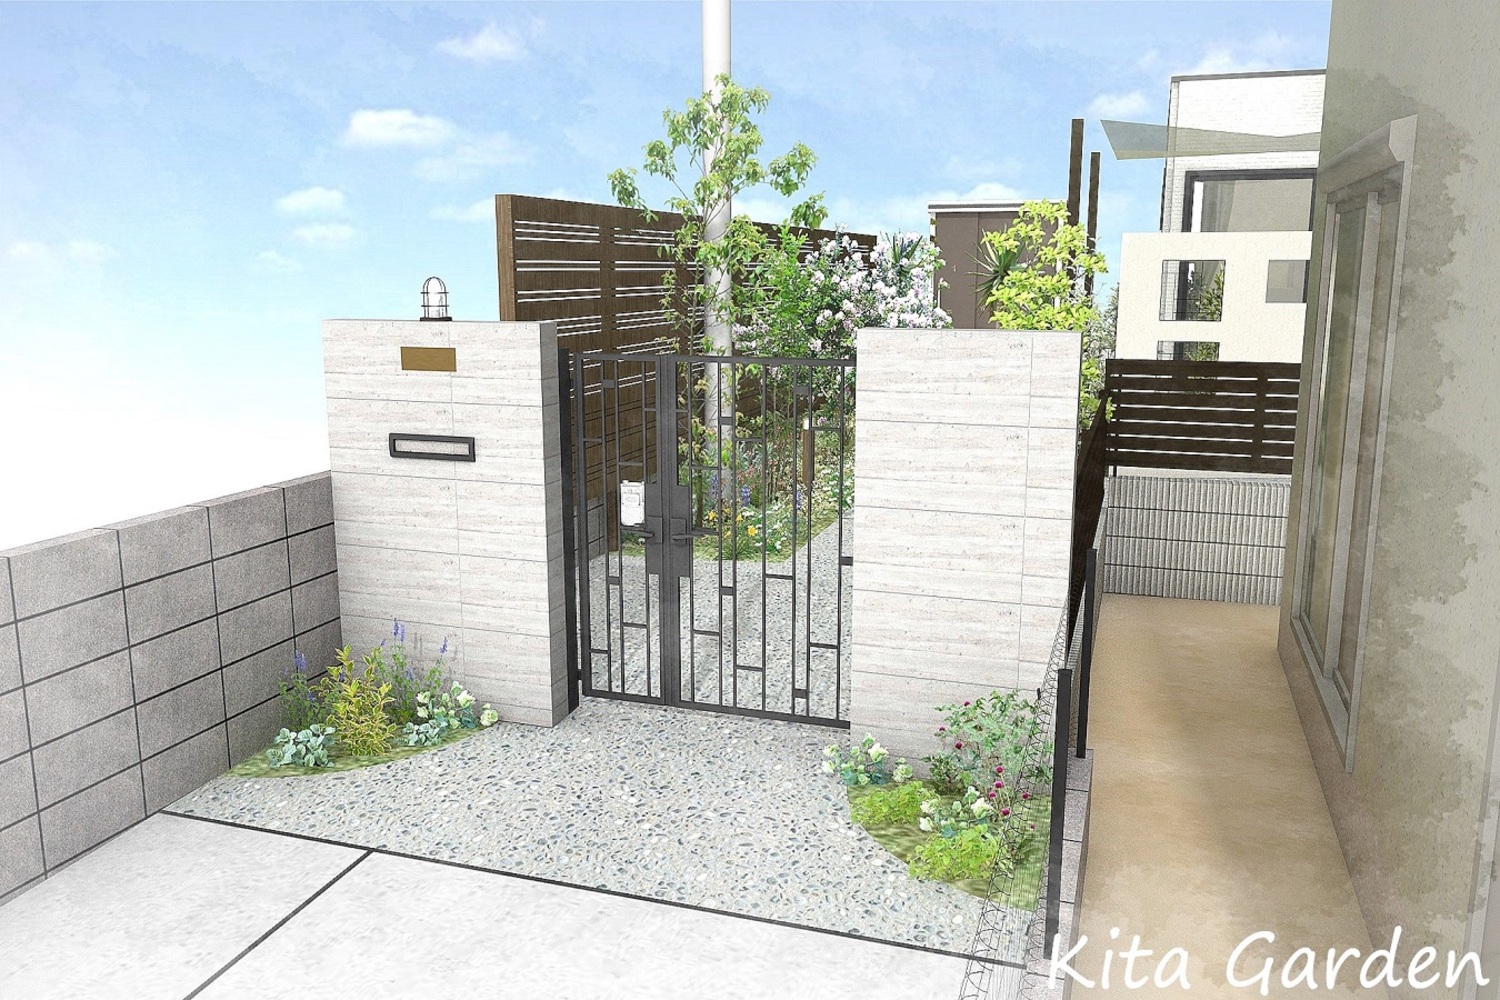 伊丹市S様邸の新築外構と庭のプランニング図面